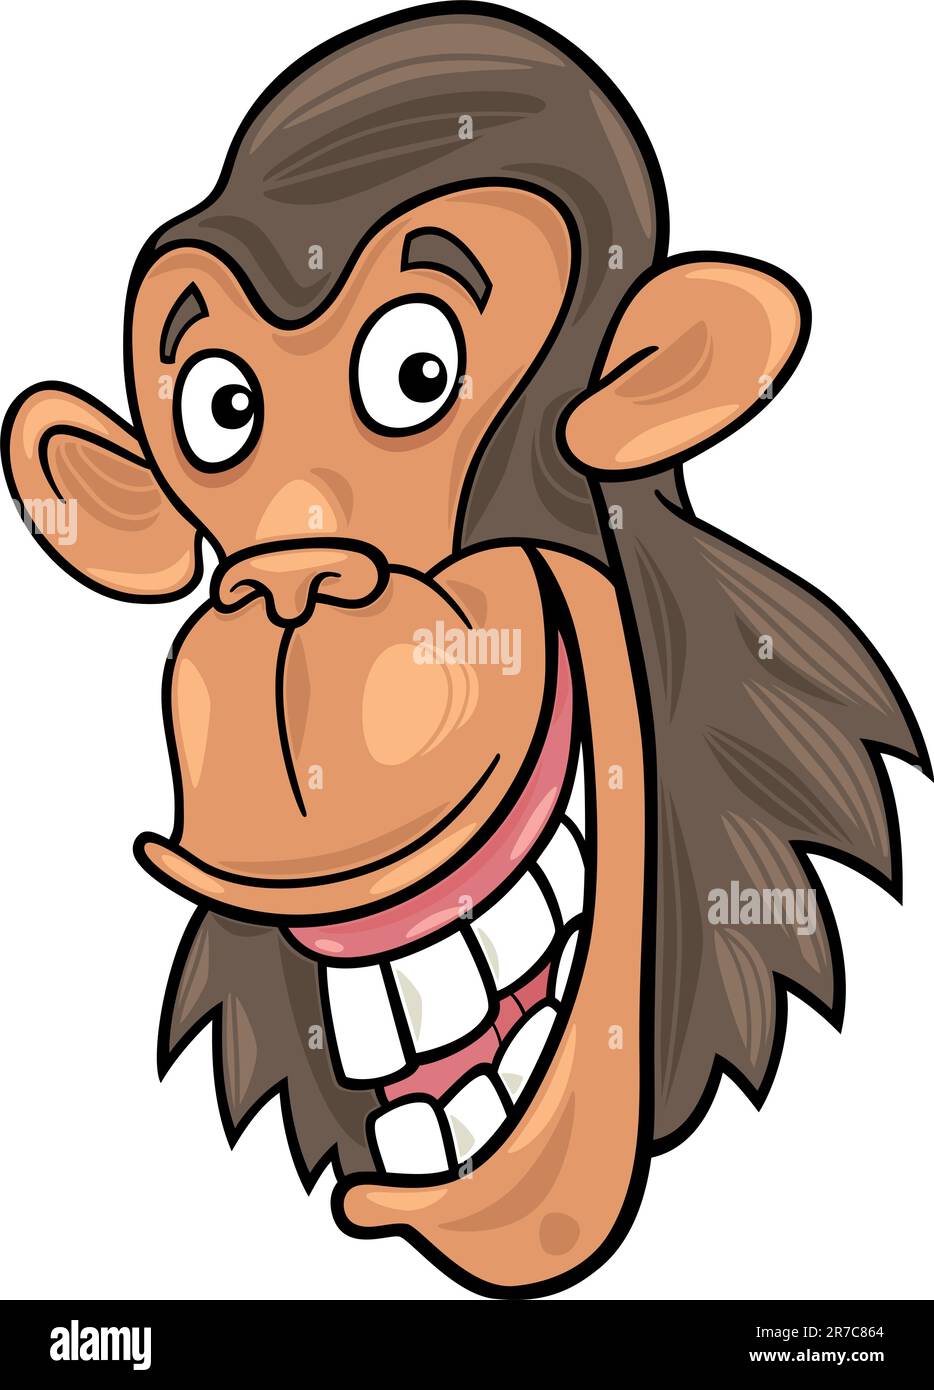 Cartoon illustration de drôle singe chimpanzé Illustration de Vecteur